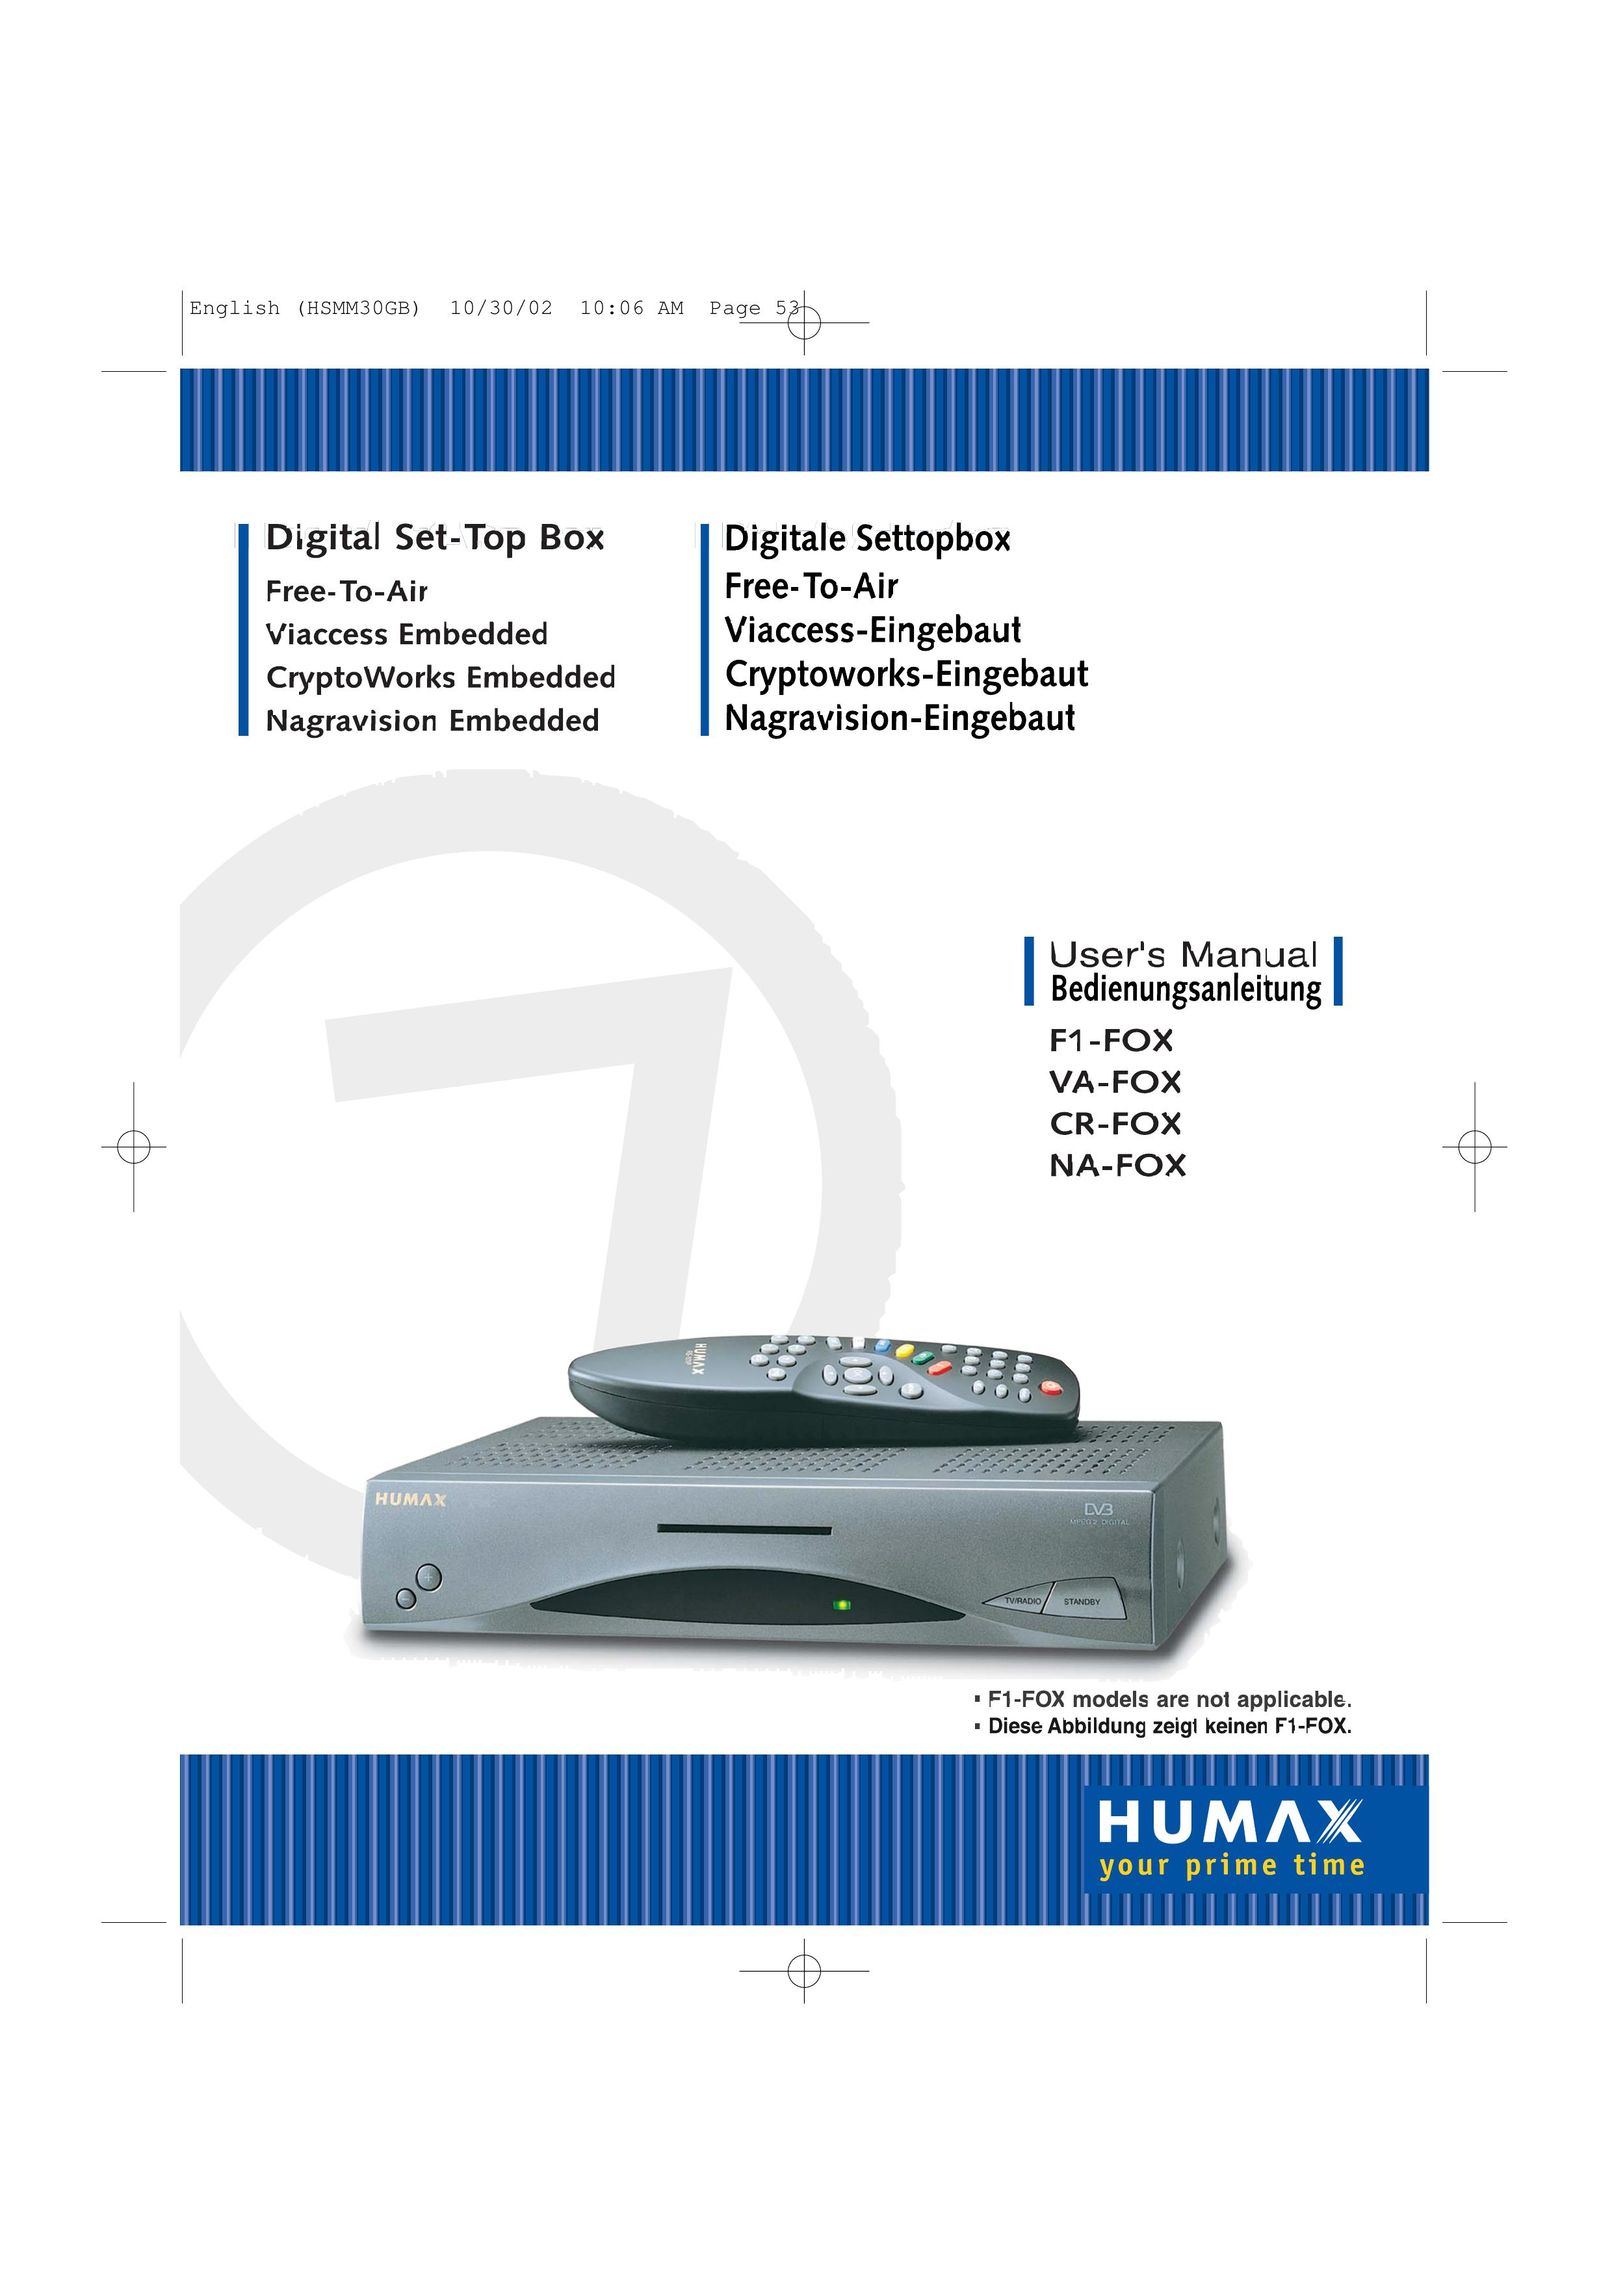 Humax CA-FOX CD Player User Manual